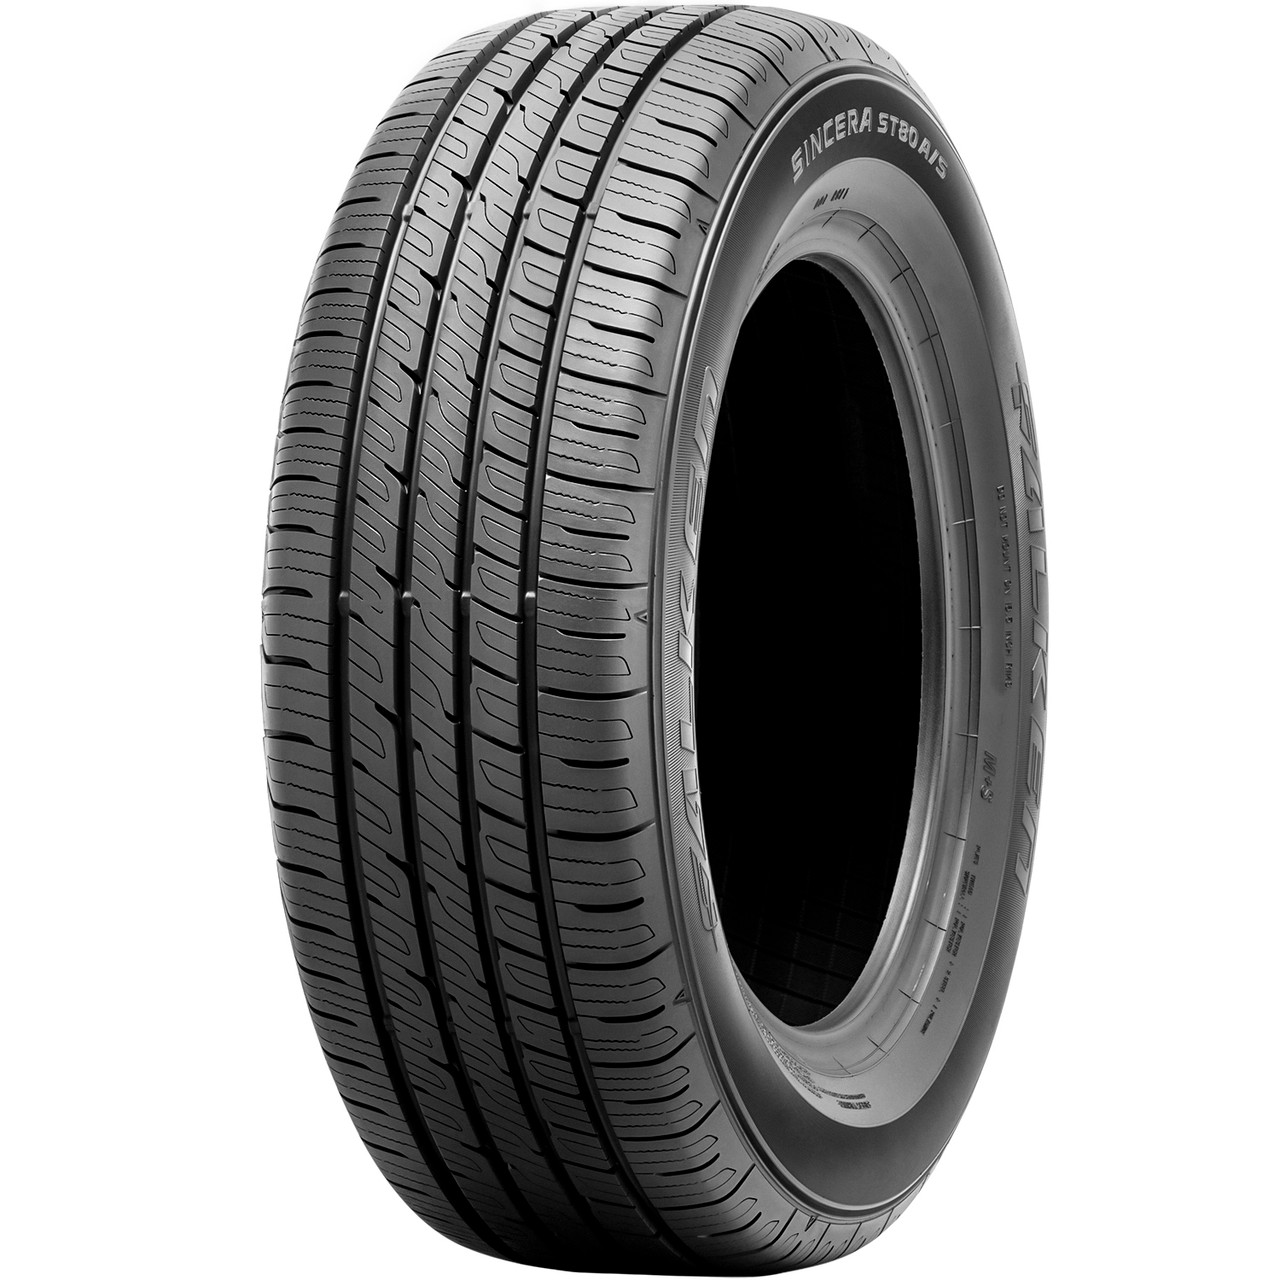 Photos - Tyre Falken Sincera ST80 A/S 185/60R15, All Season, Touring tires. 